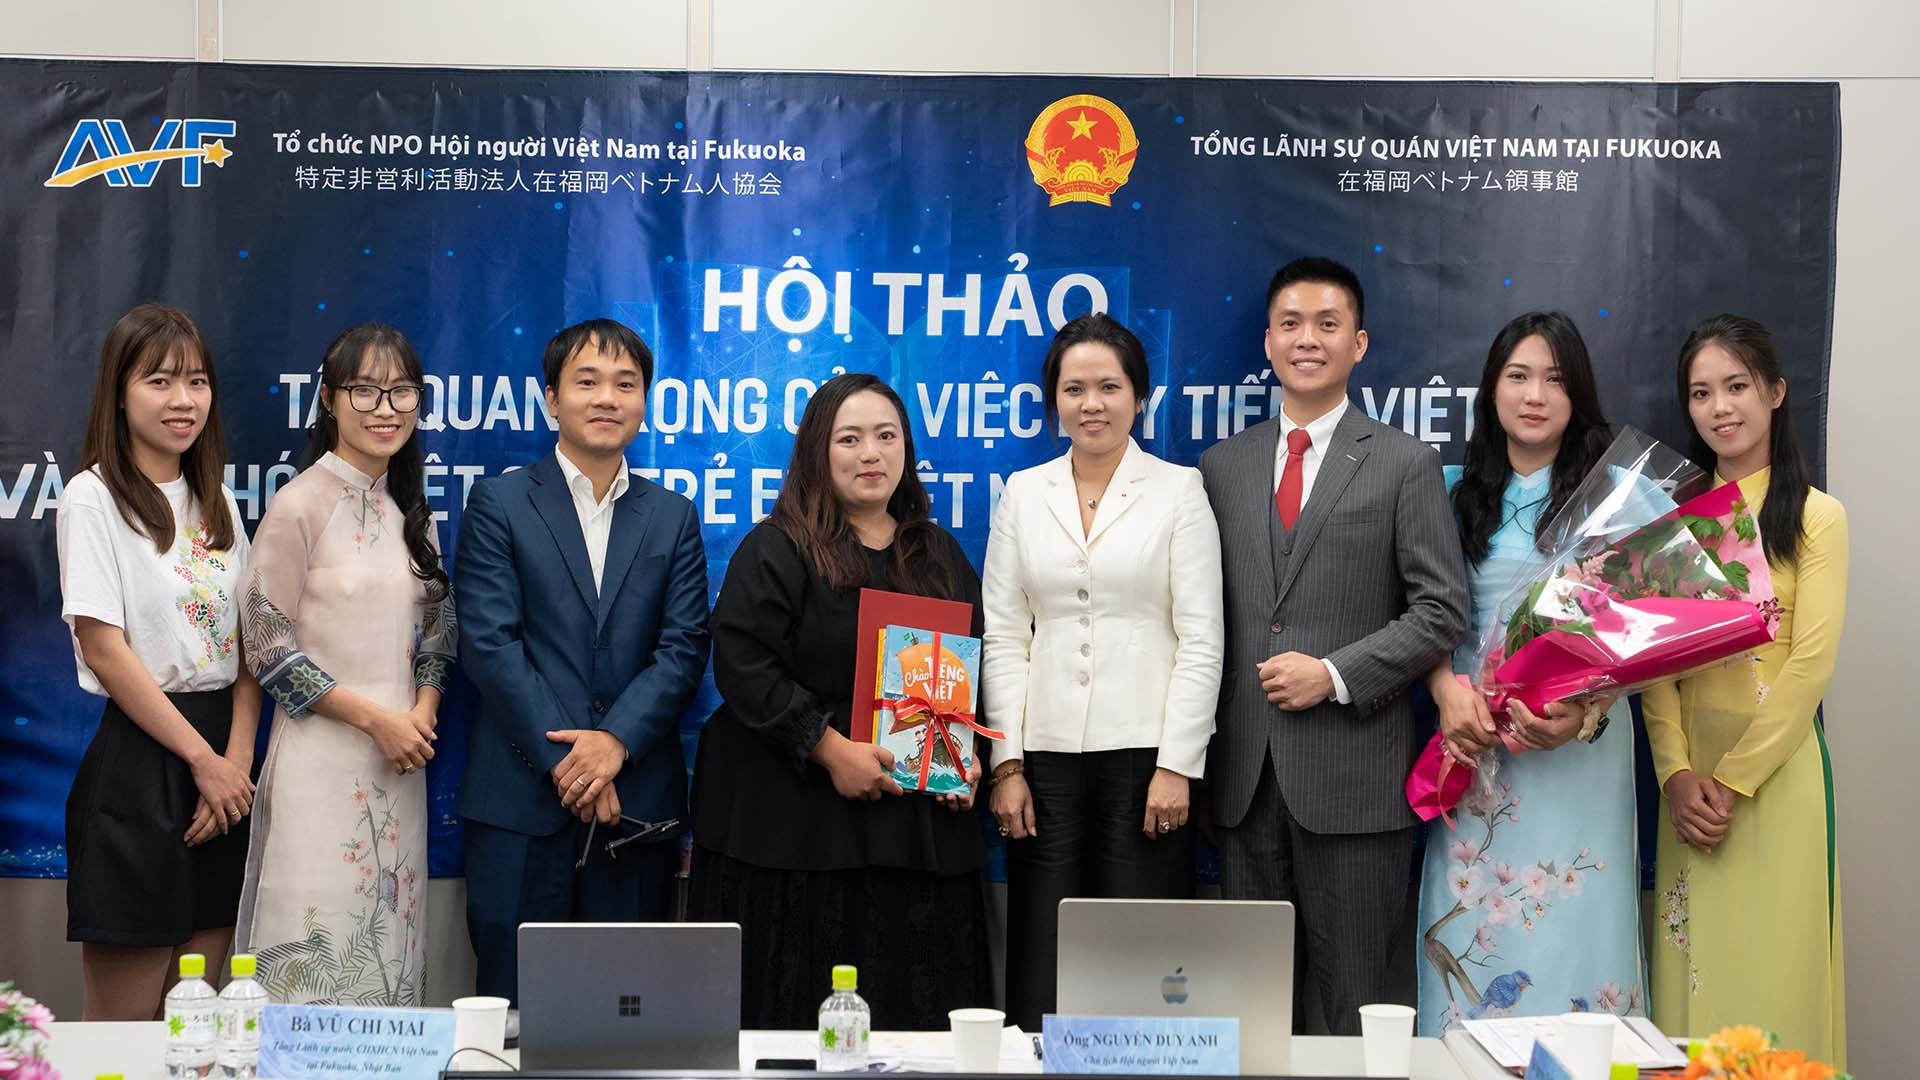 Bà Vũ Chi Mai, Tổng lãnh sự Việt Nam tại Fukuoka, Nhật Bản trao tặng sách cho Ban Tiếng Việt của Hội người Việt Nam tại Fukuoka.